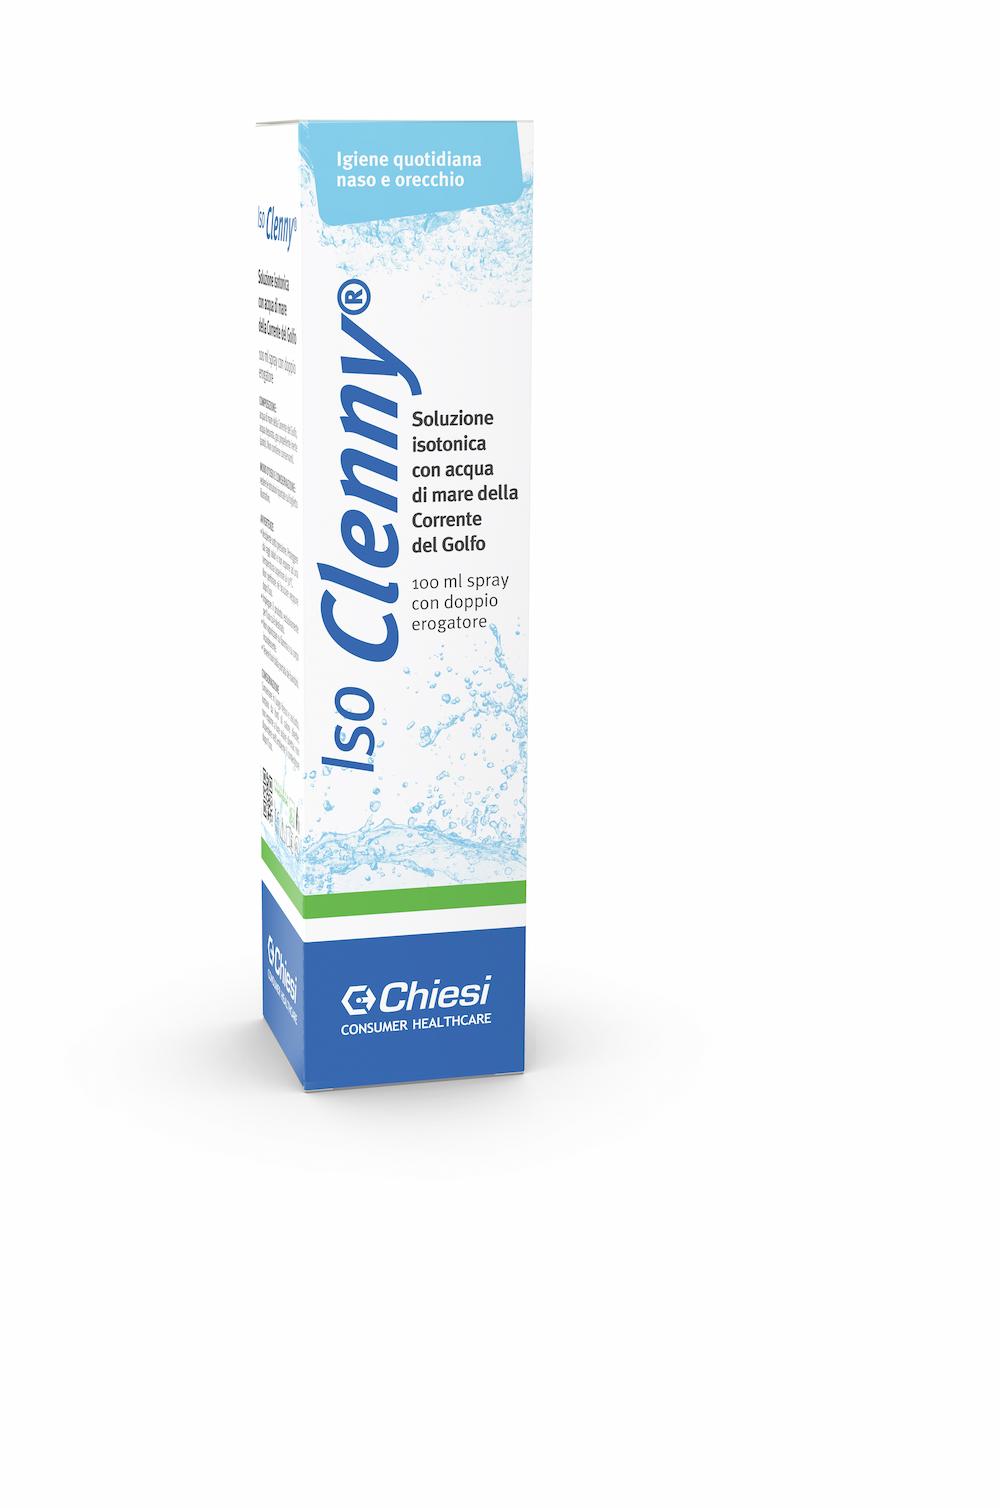 Immagine della confezione di Iso Clenny spray, dispositivo medico di Chiesi Farmaceutici S.p.A.